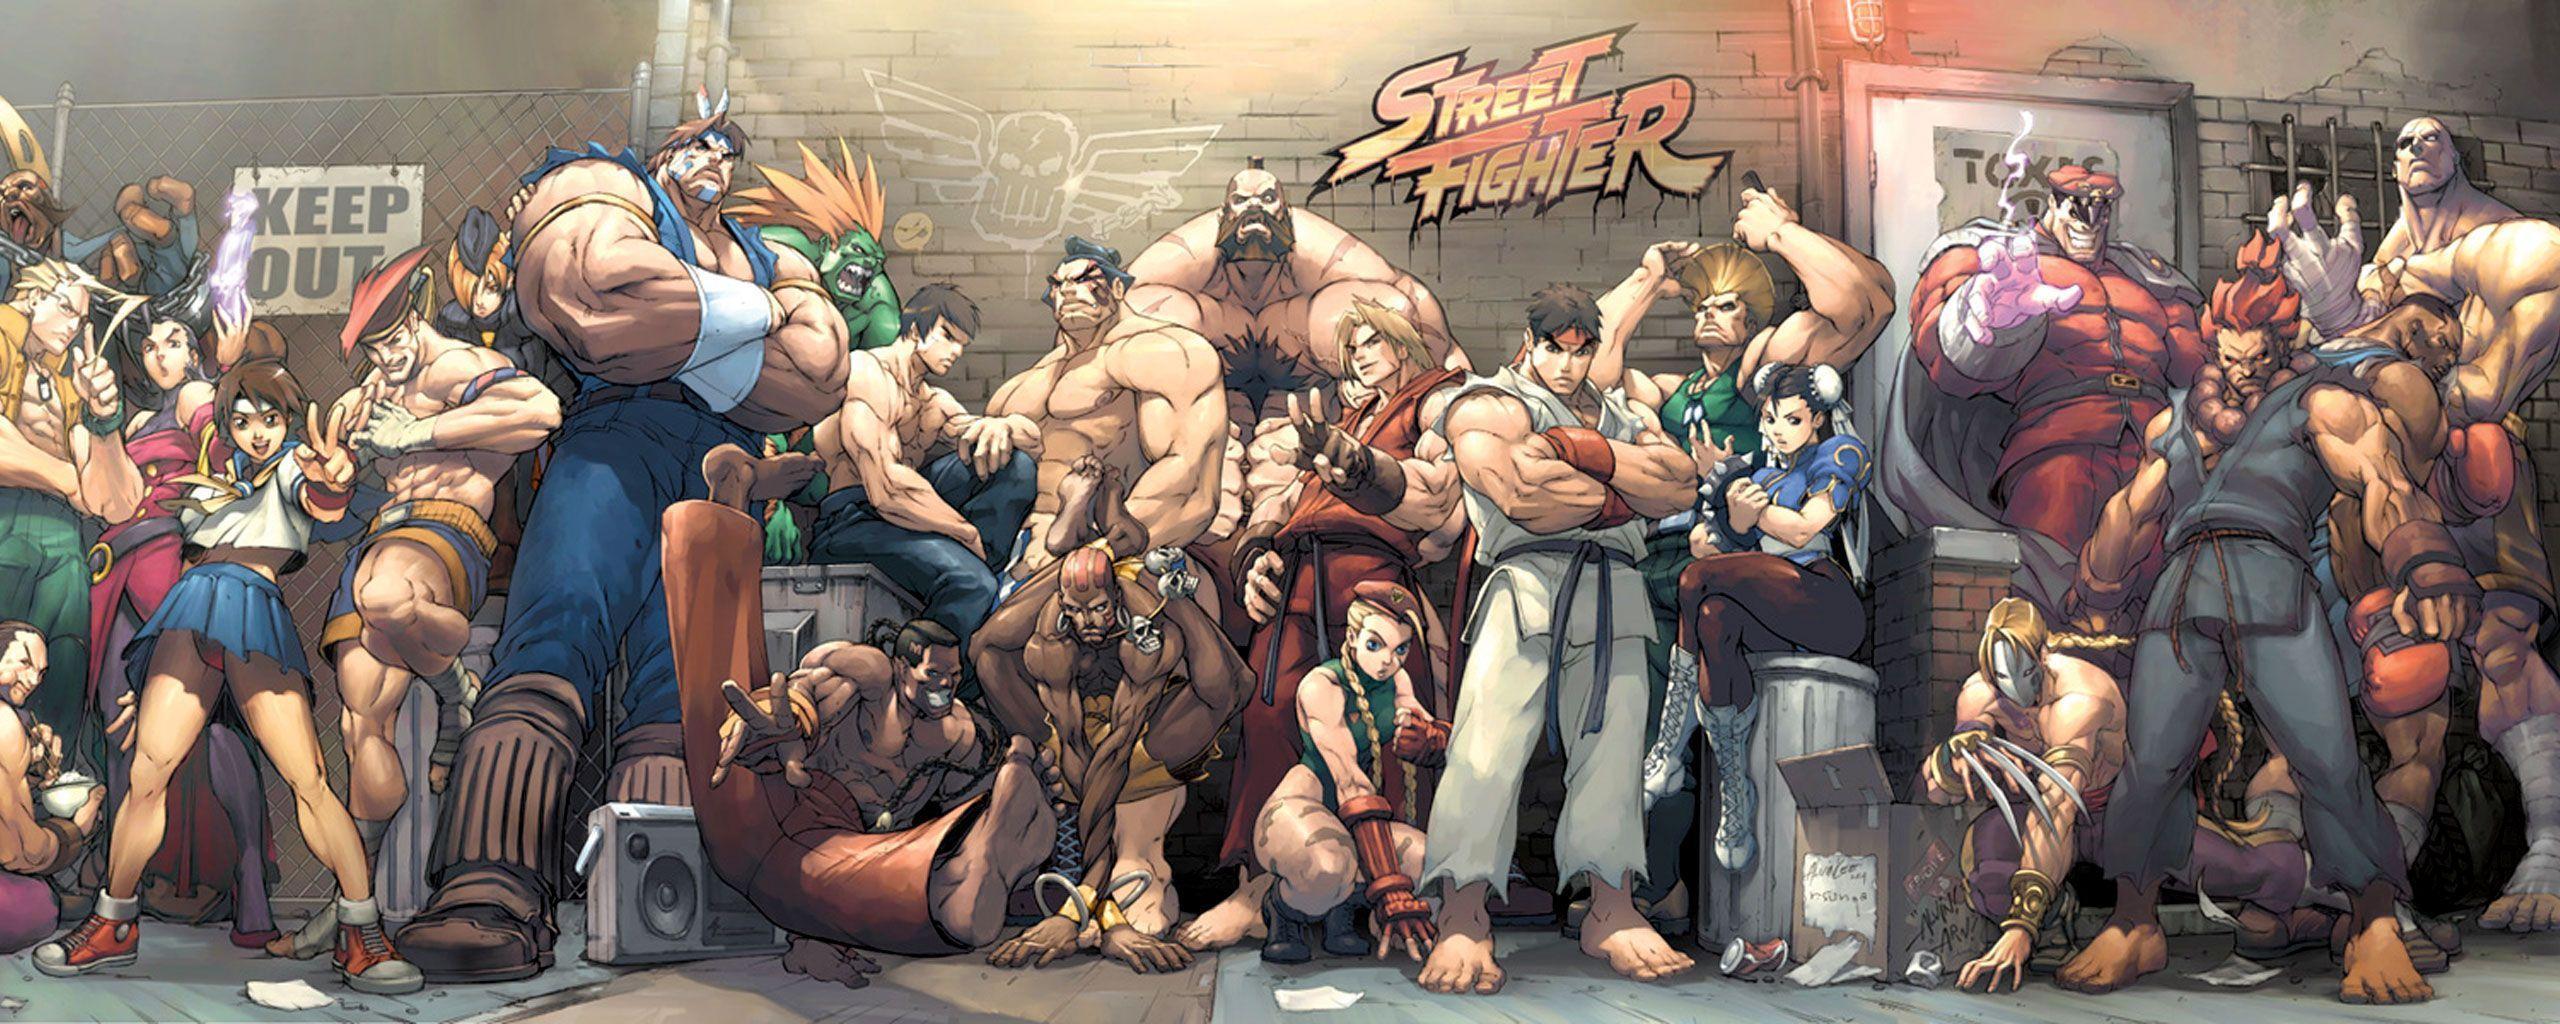 Street Fighter 6 Wallpaper 4K Luke Cover Art Key Art 9757